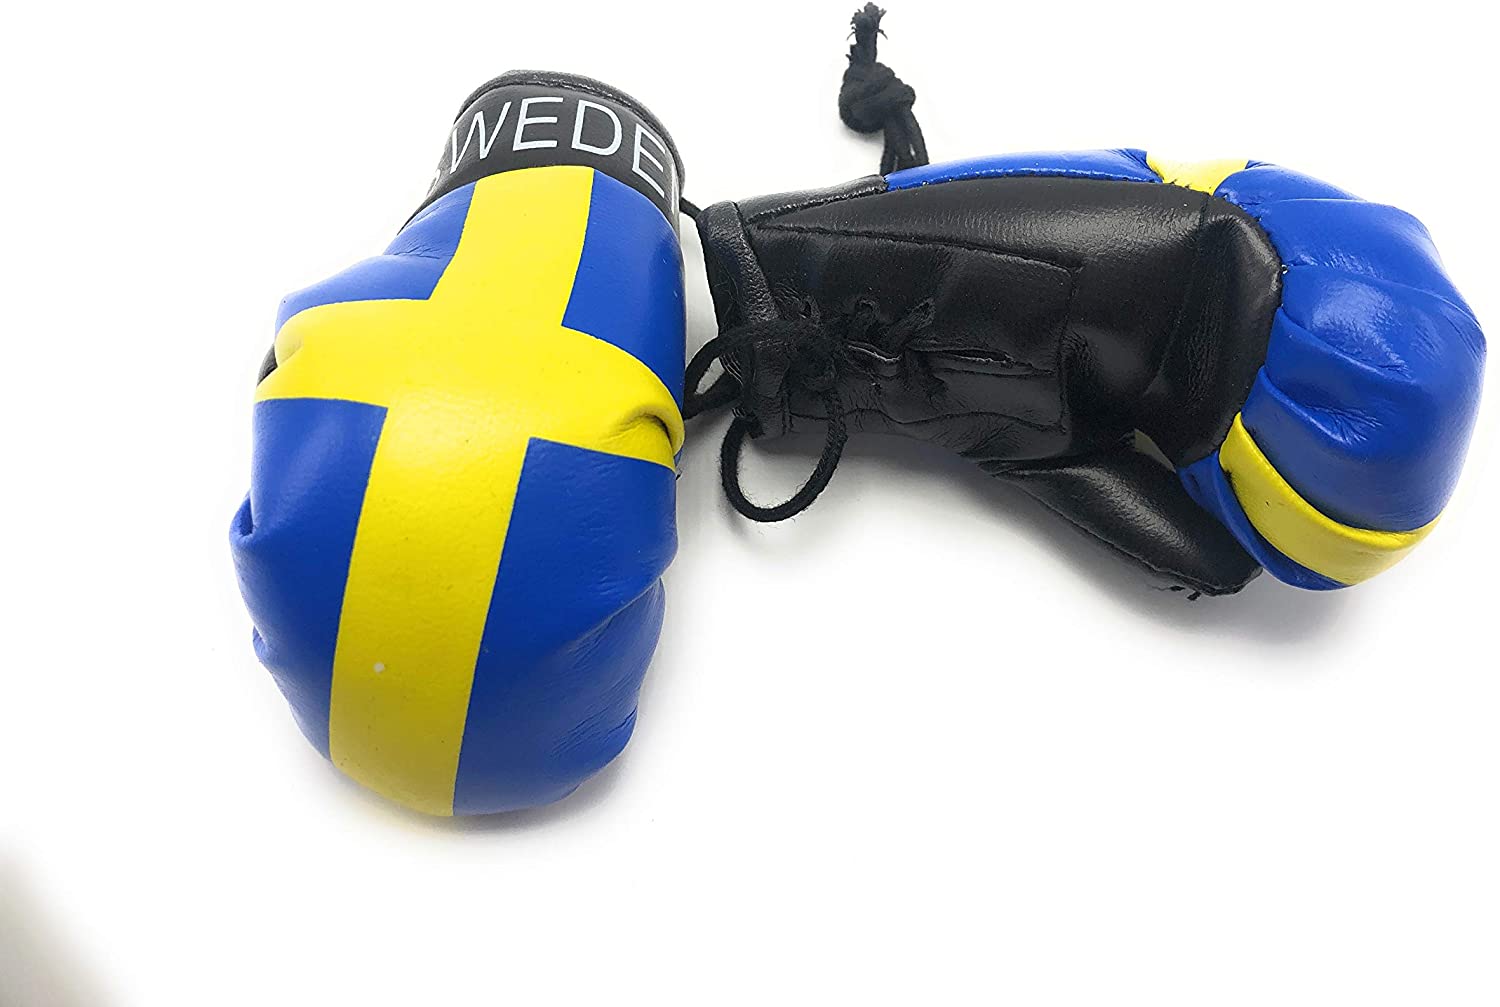 Dlaczego boks był zakazany w Szwecji? Zdjęcie rękawic bokserskich z nadrukowaną flagą Szwecji